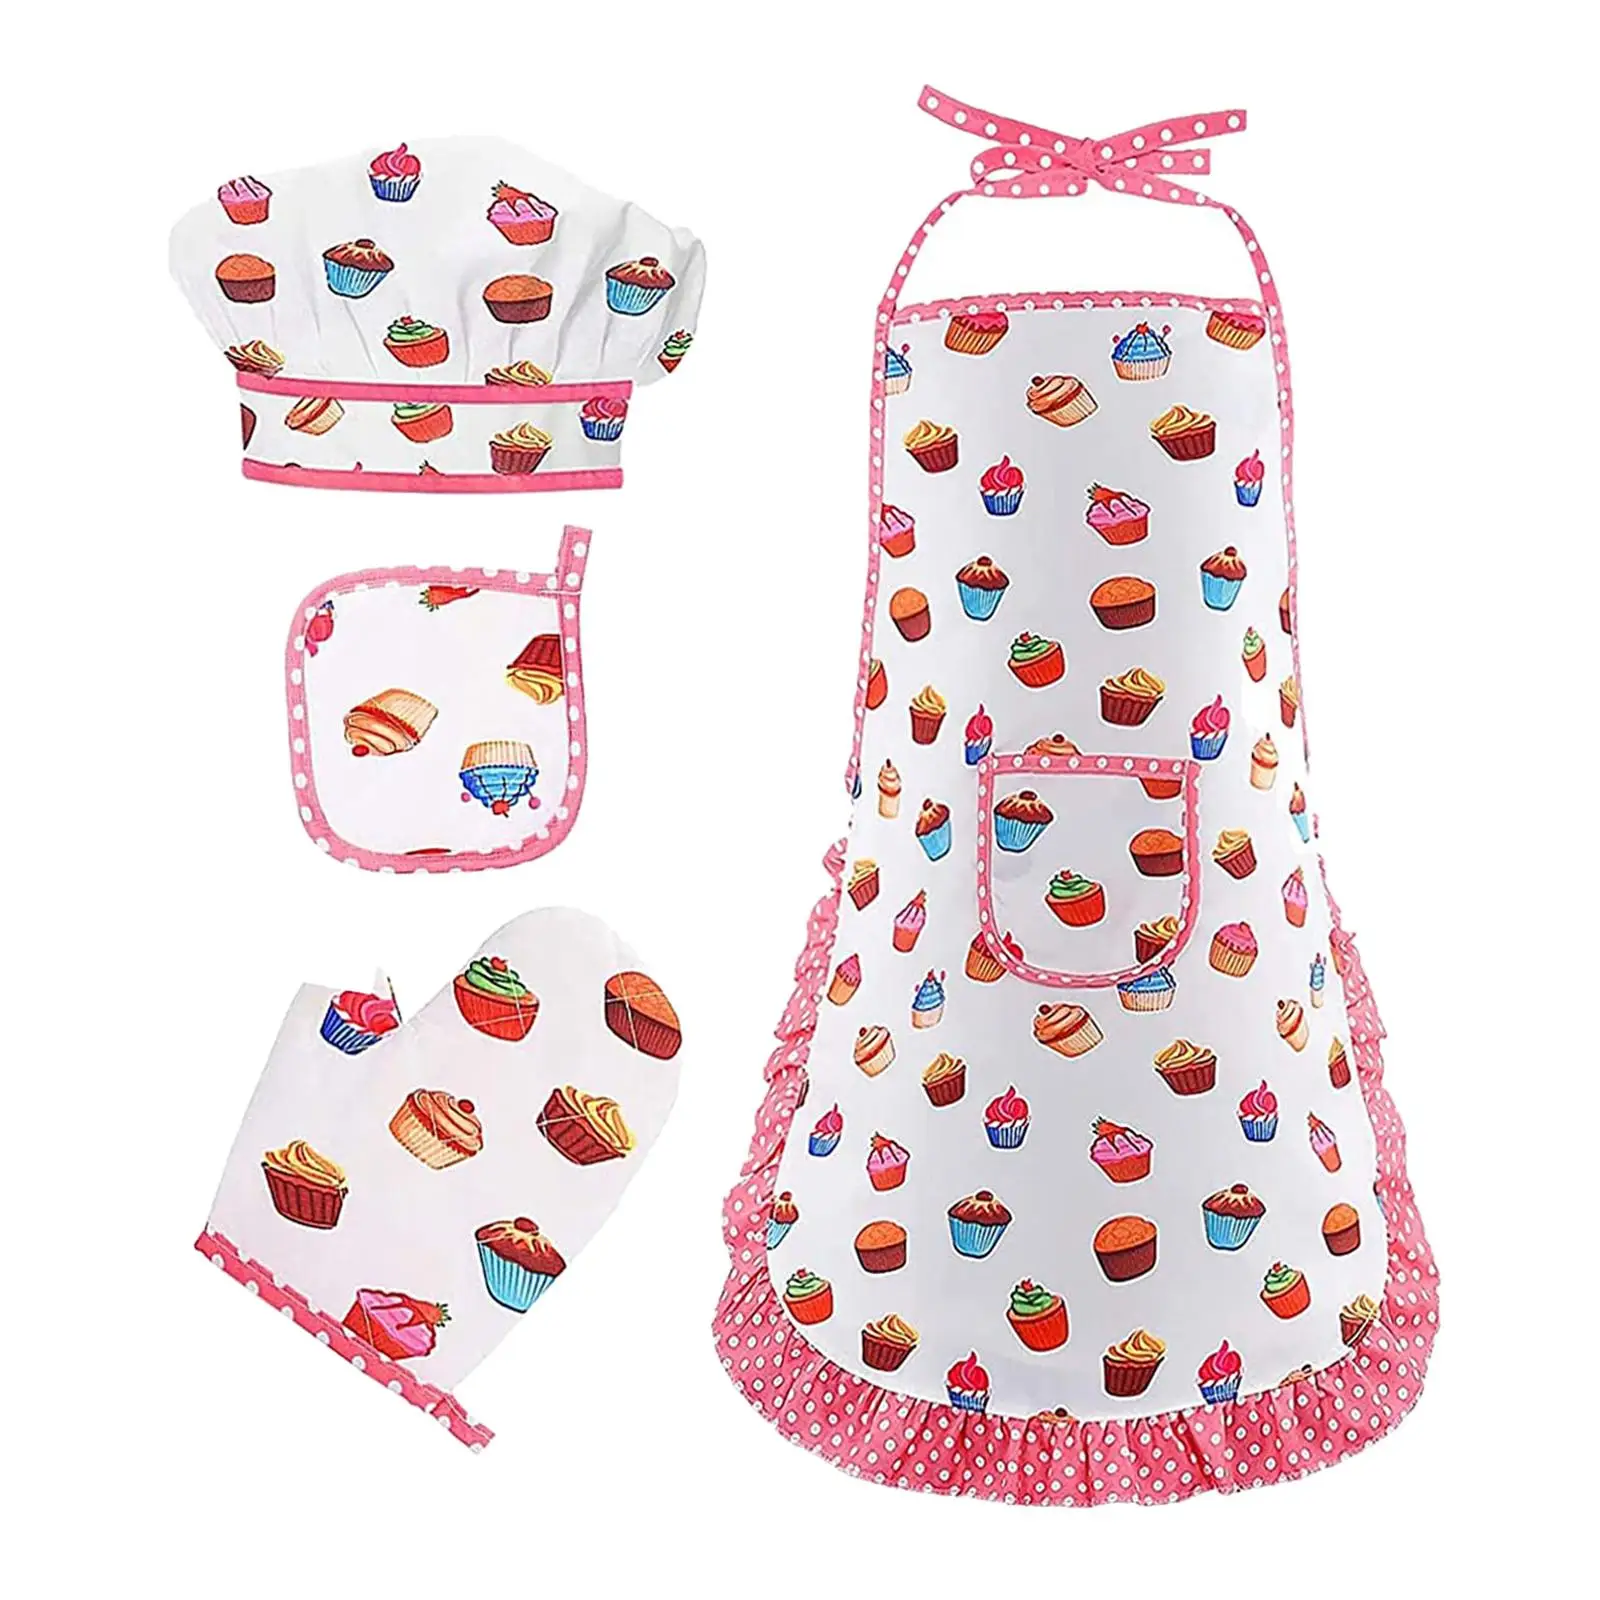 Chef Clothing Set Developmental Toy Kitchen Playset for Girls Birthday Gift